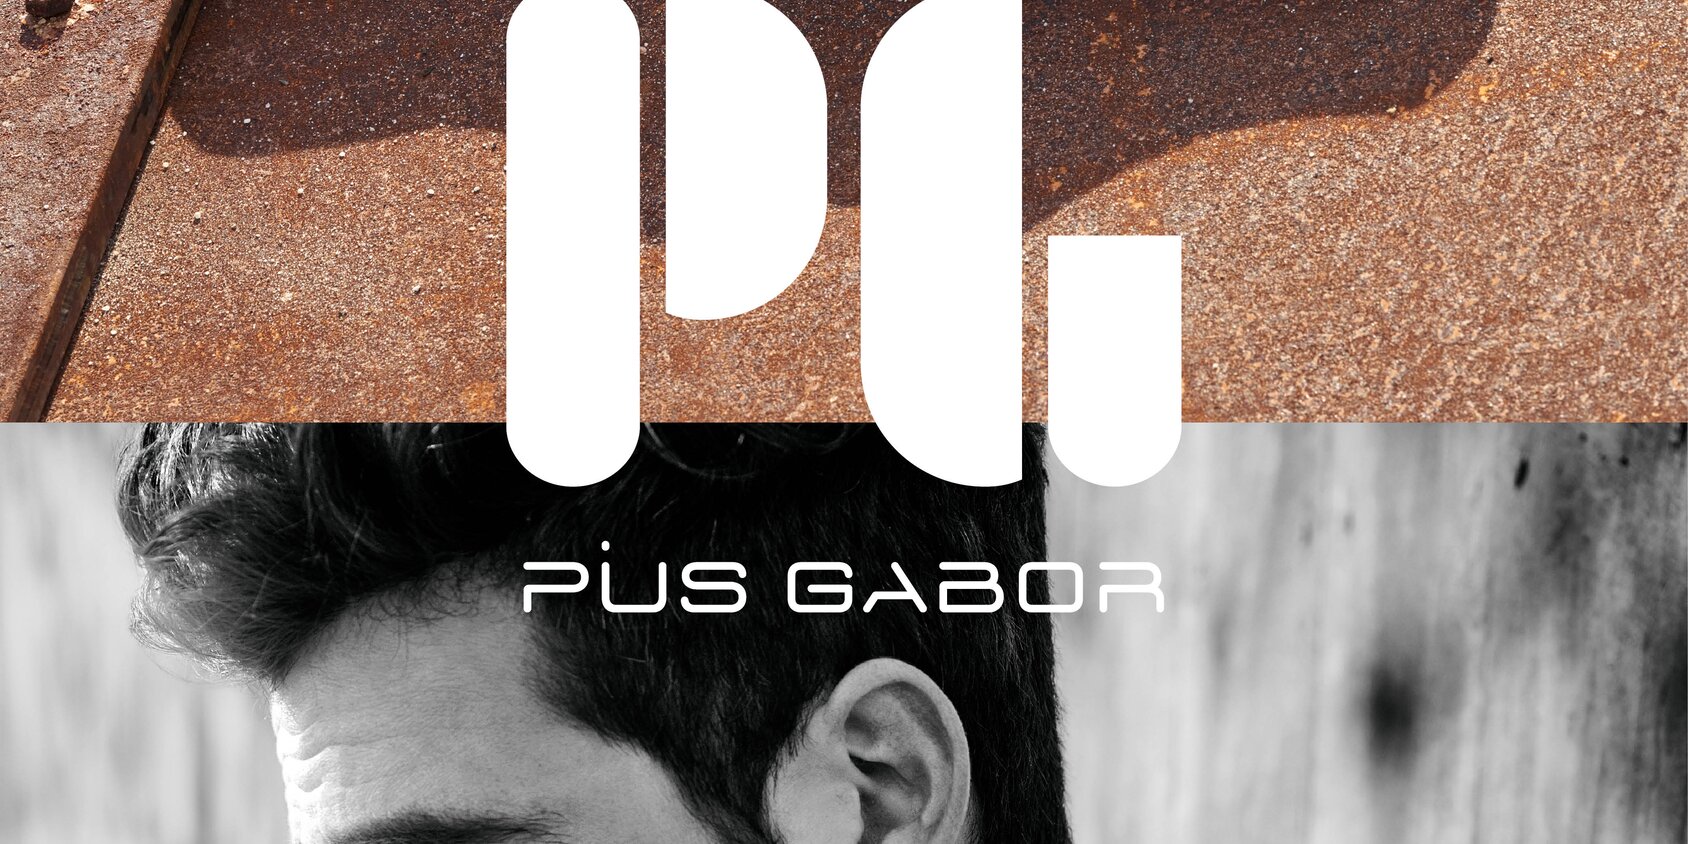 Chaussures Gabor | La dernière collection de Pius Gabor | © Gabor Shoes AG, Rosenheim